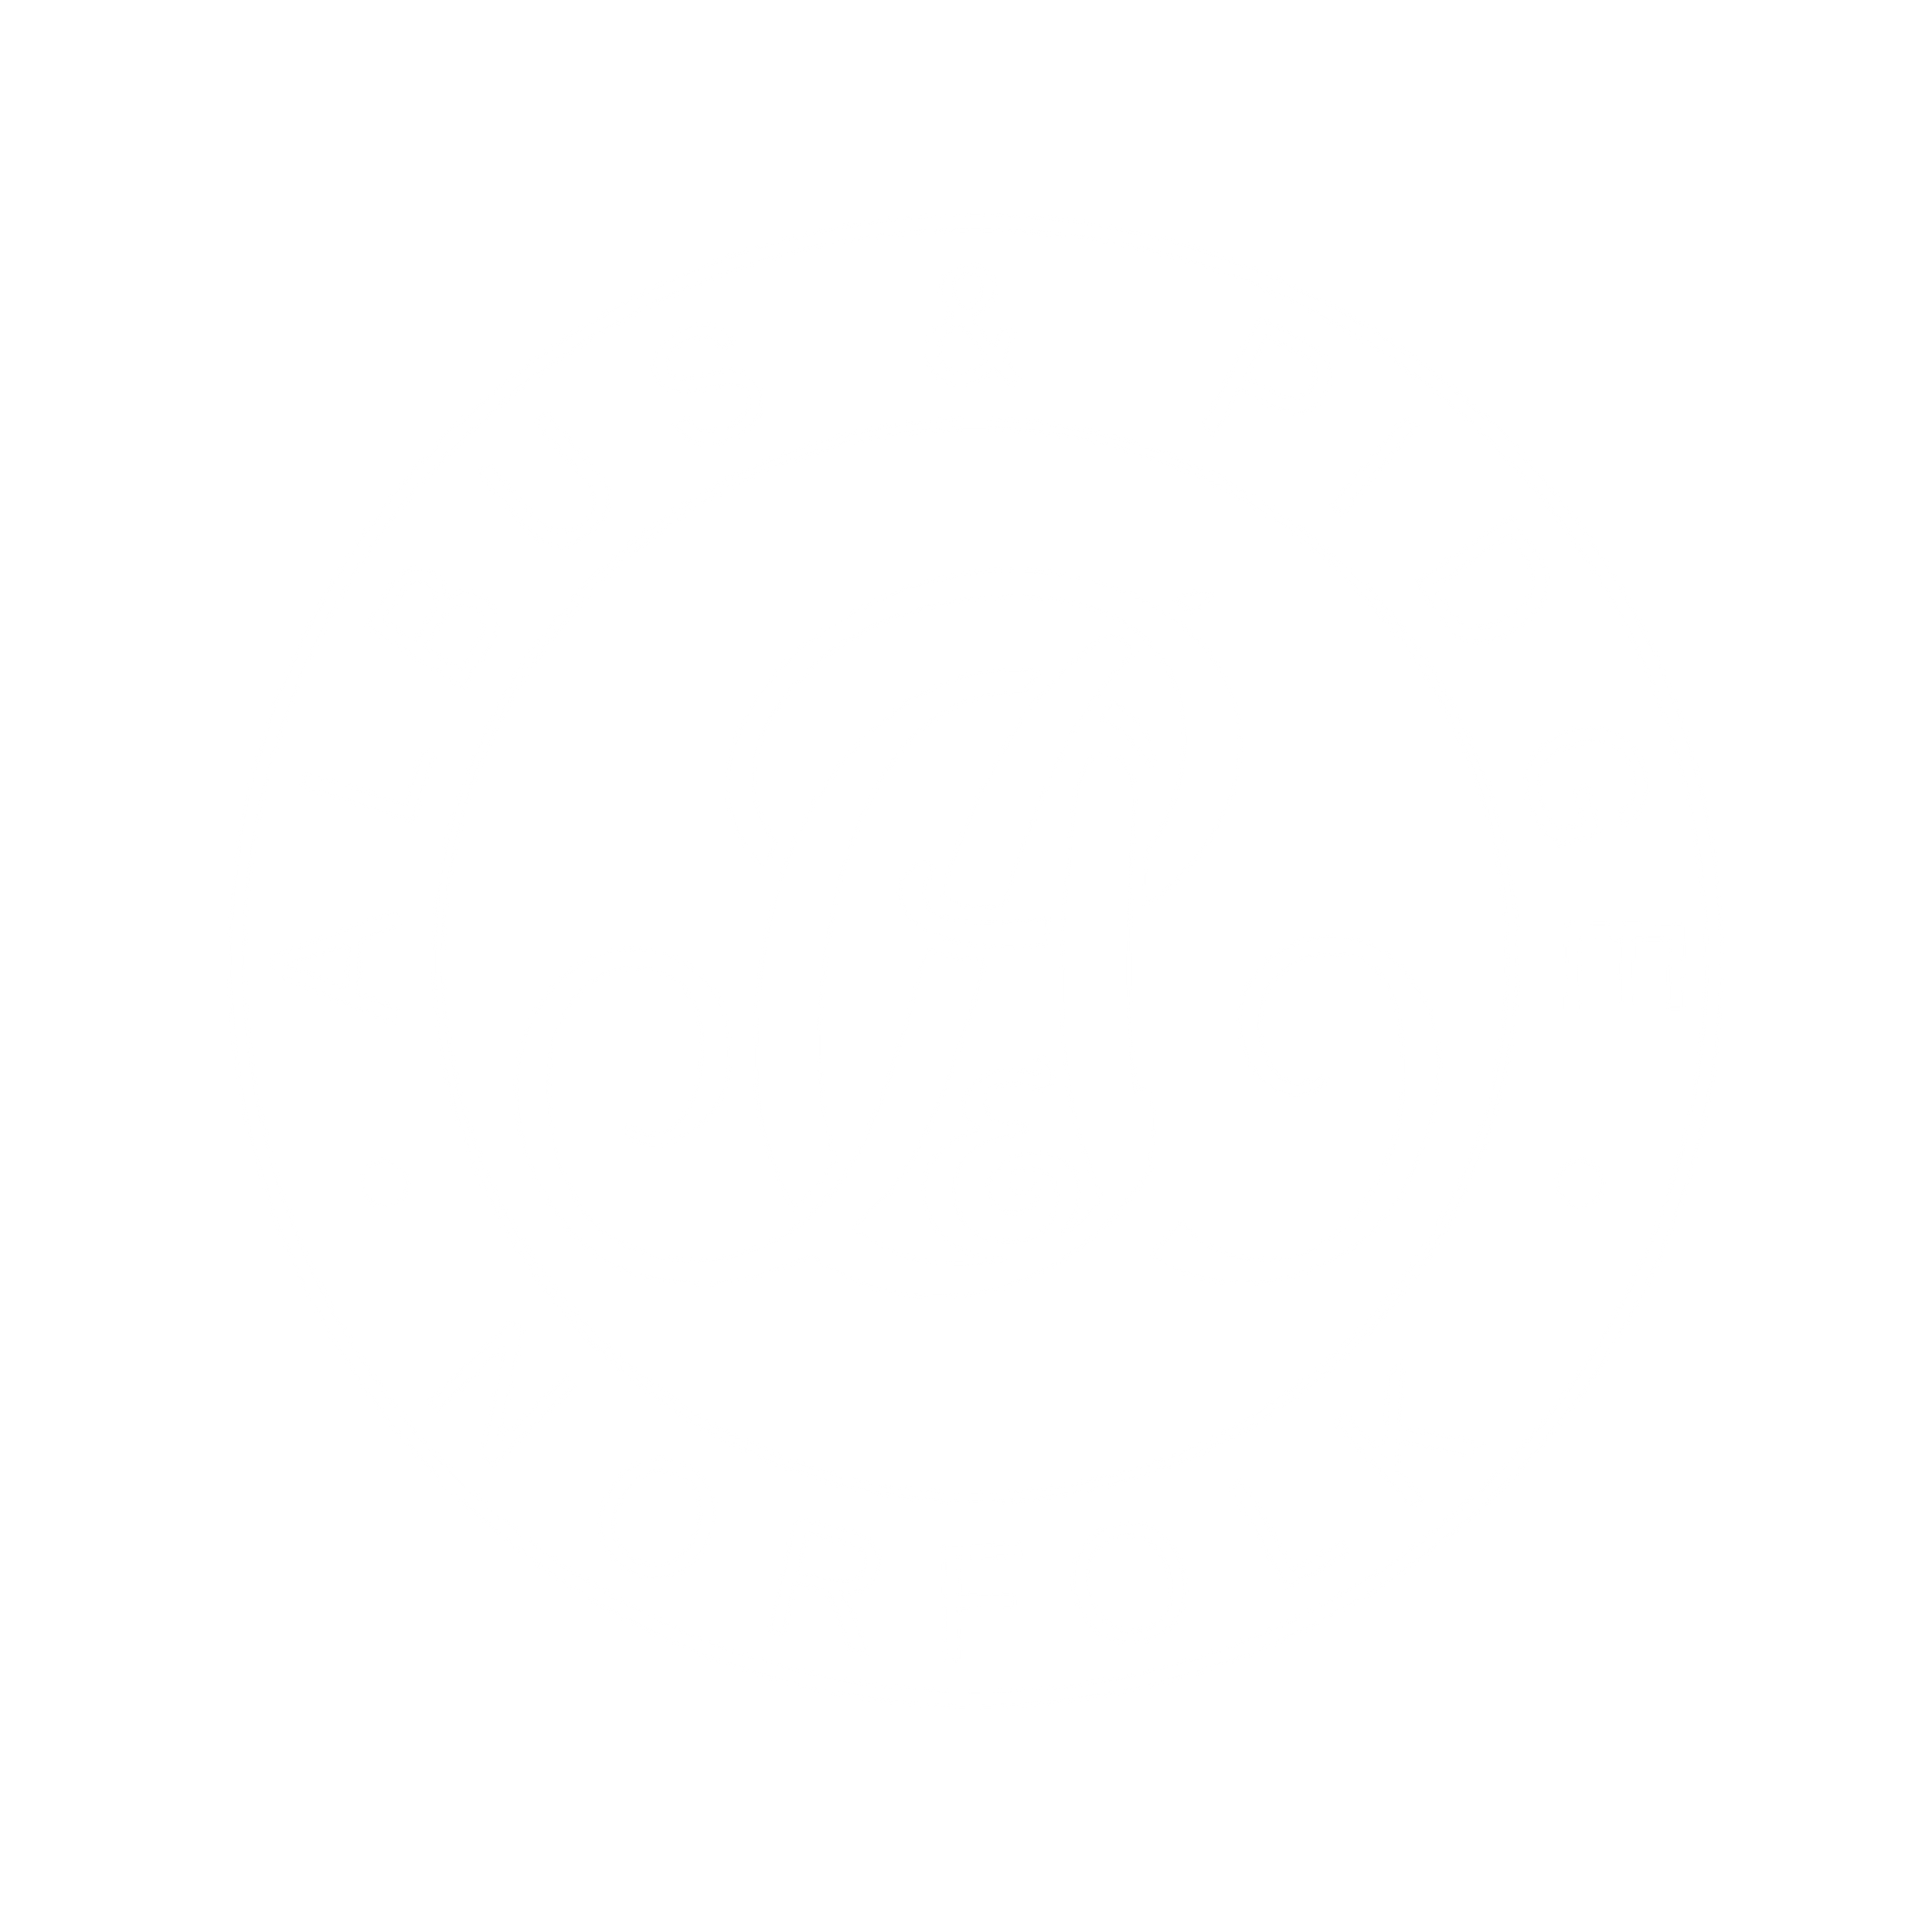 Albus & Pidge